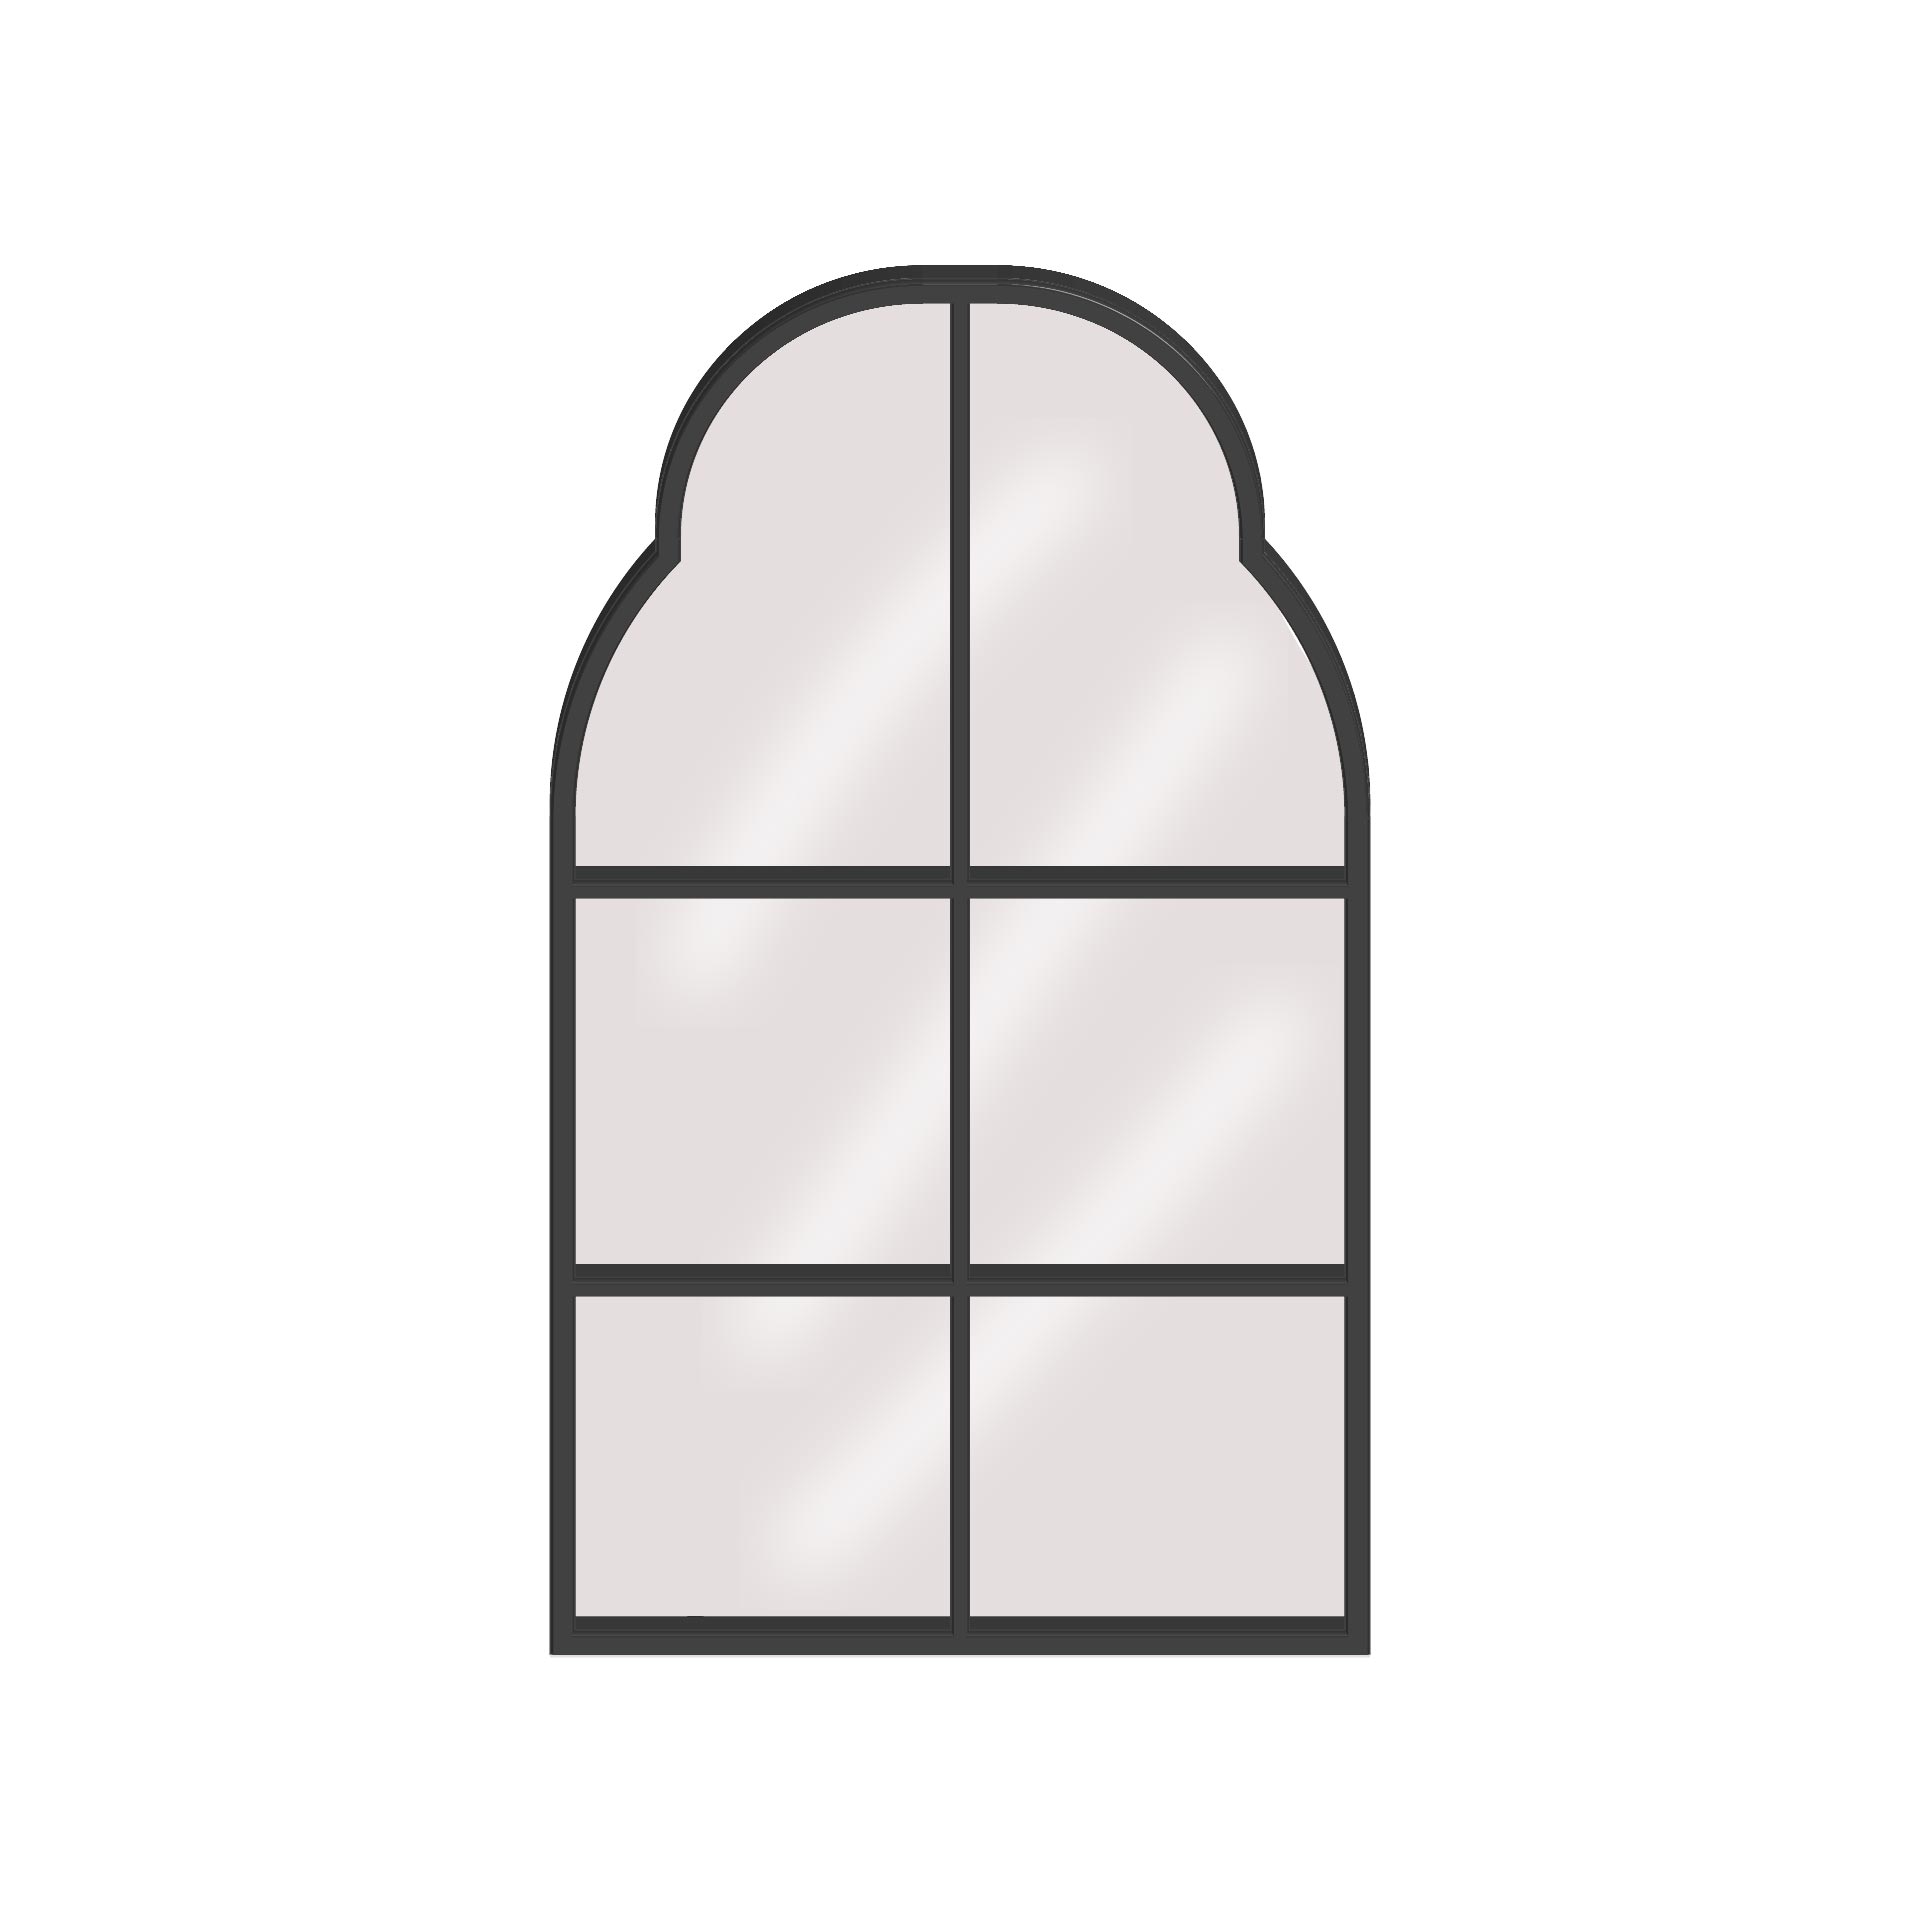 8-best-window-template-printable-printablee